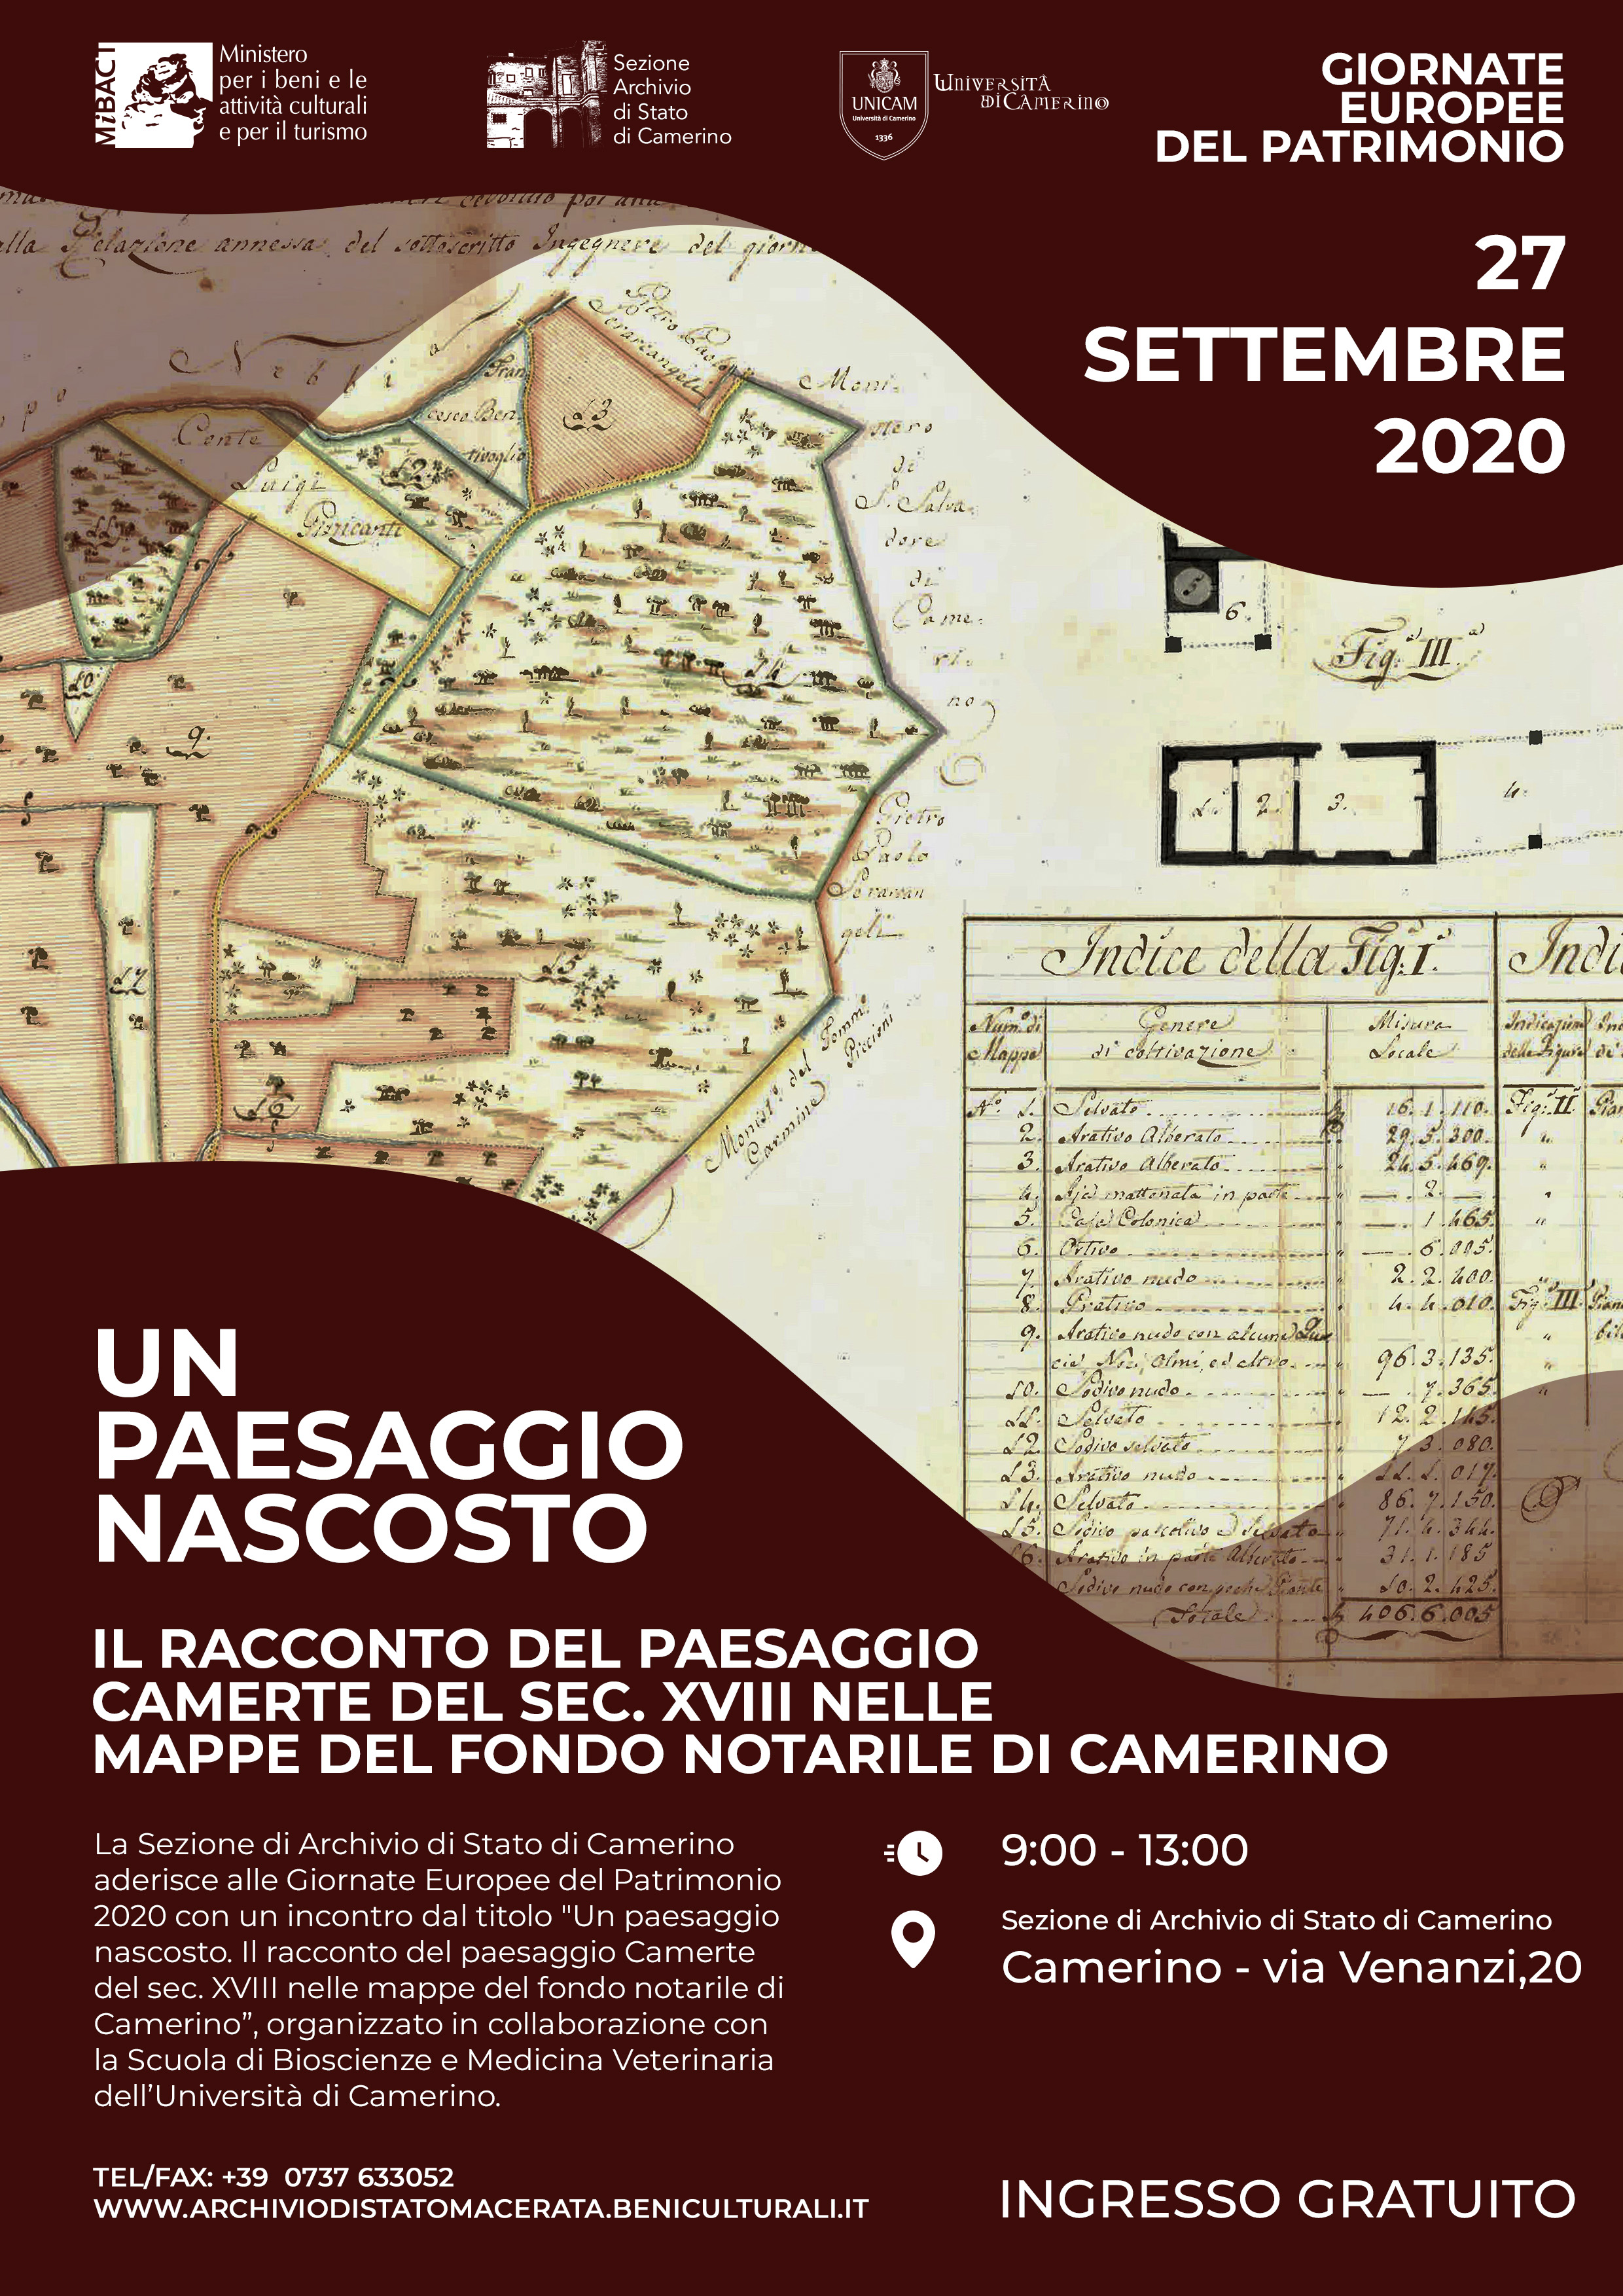 Giornate Europee del Patrimonio – Apertura straordinaria Sezione di Archivio di Stato di Camerino 27 settembre 2020